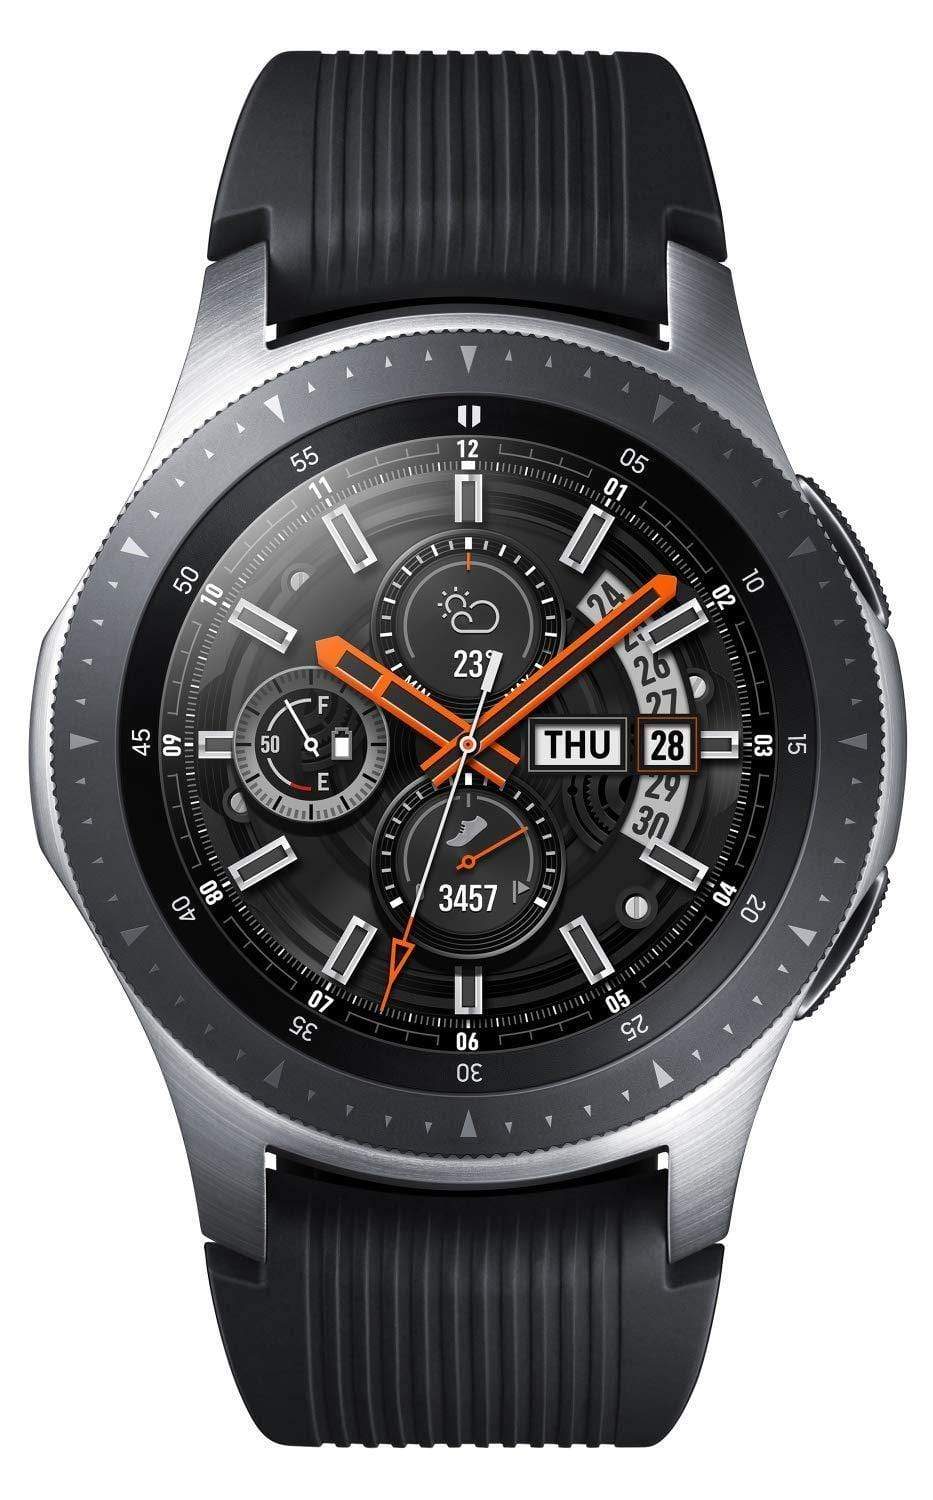 Samsung Galaxy Watch (Bluetooth + LTE, 46 mm)-Smart Watch-dealsplant